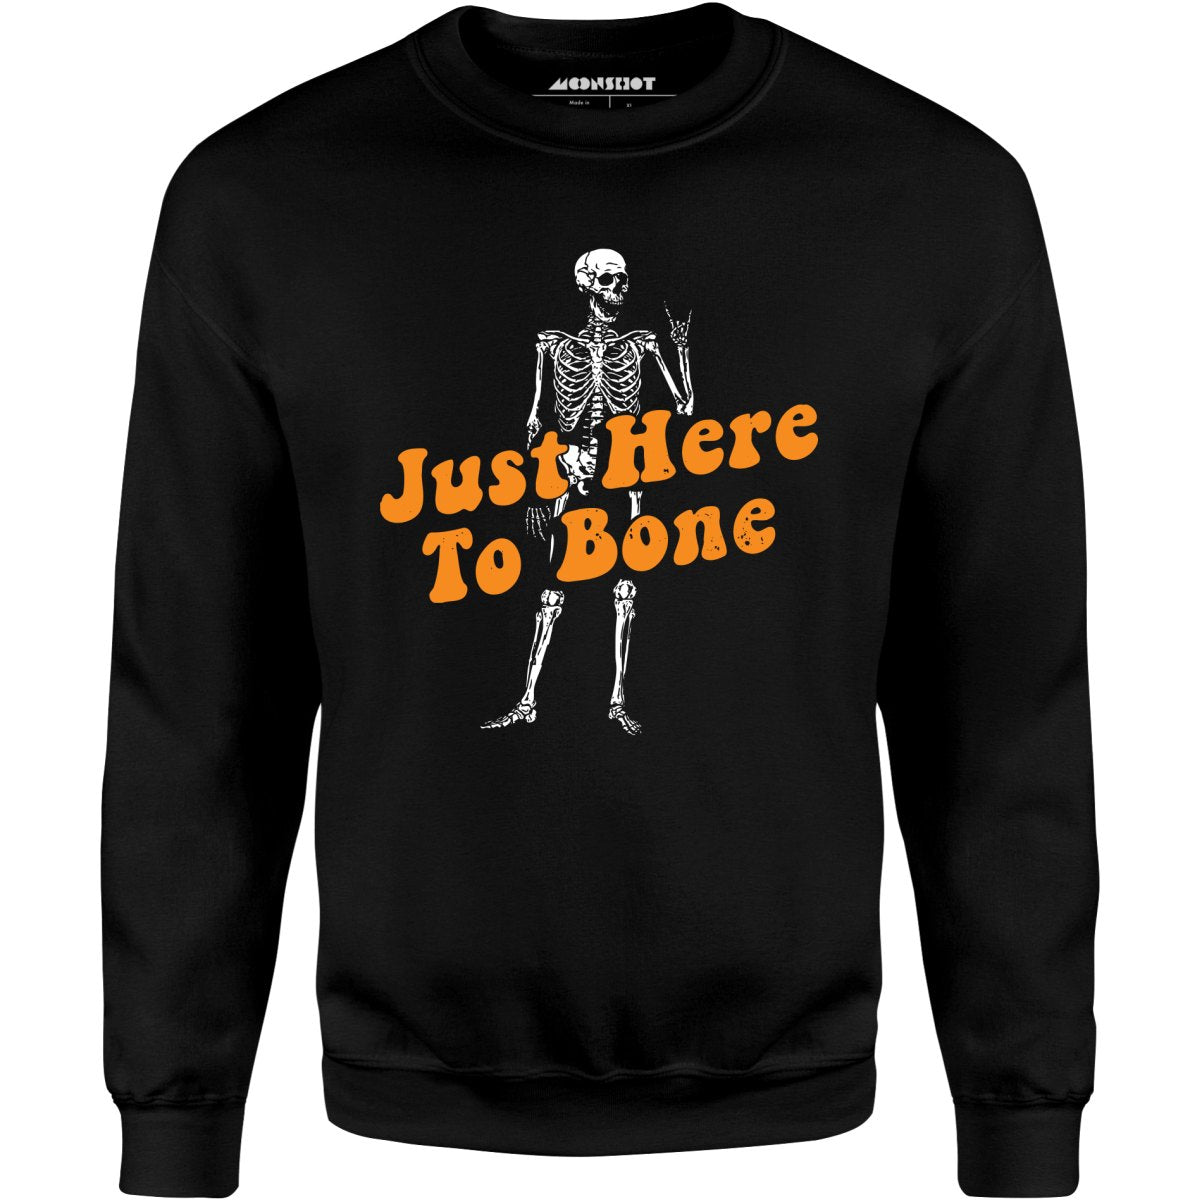 Just Here to Bone - Unisex Sweatshirt